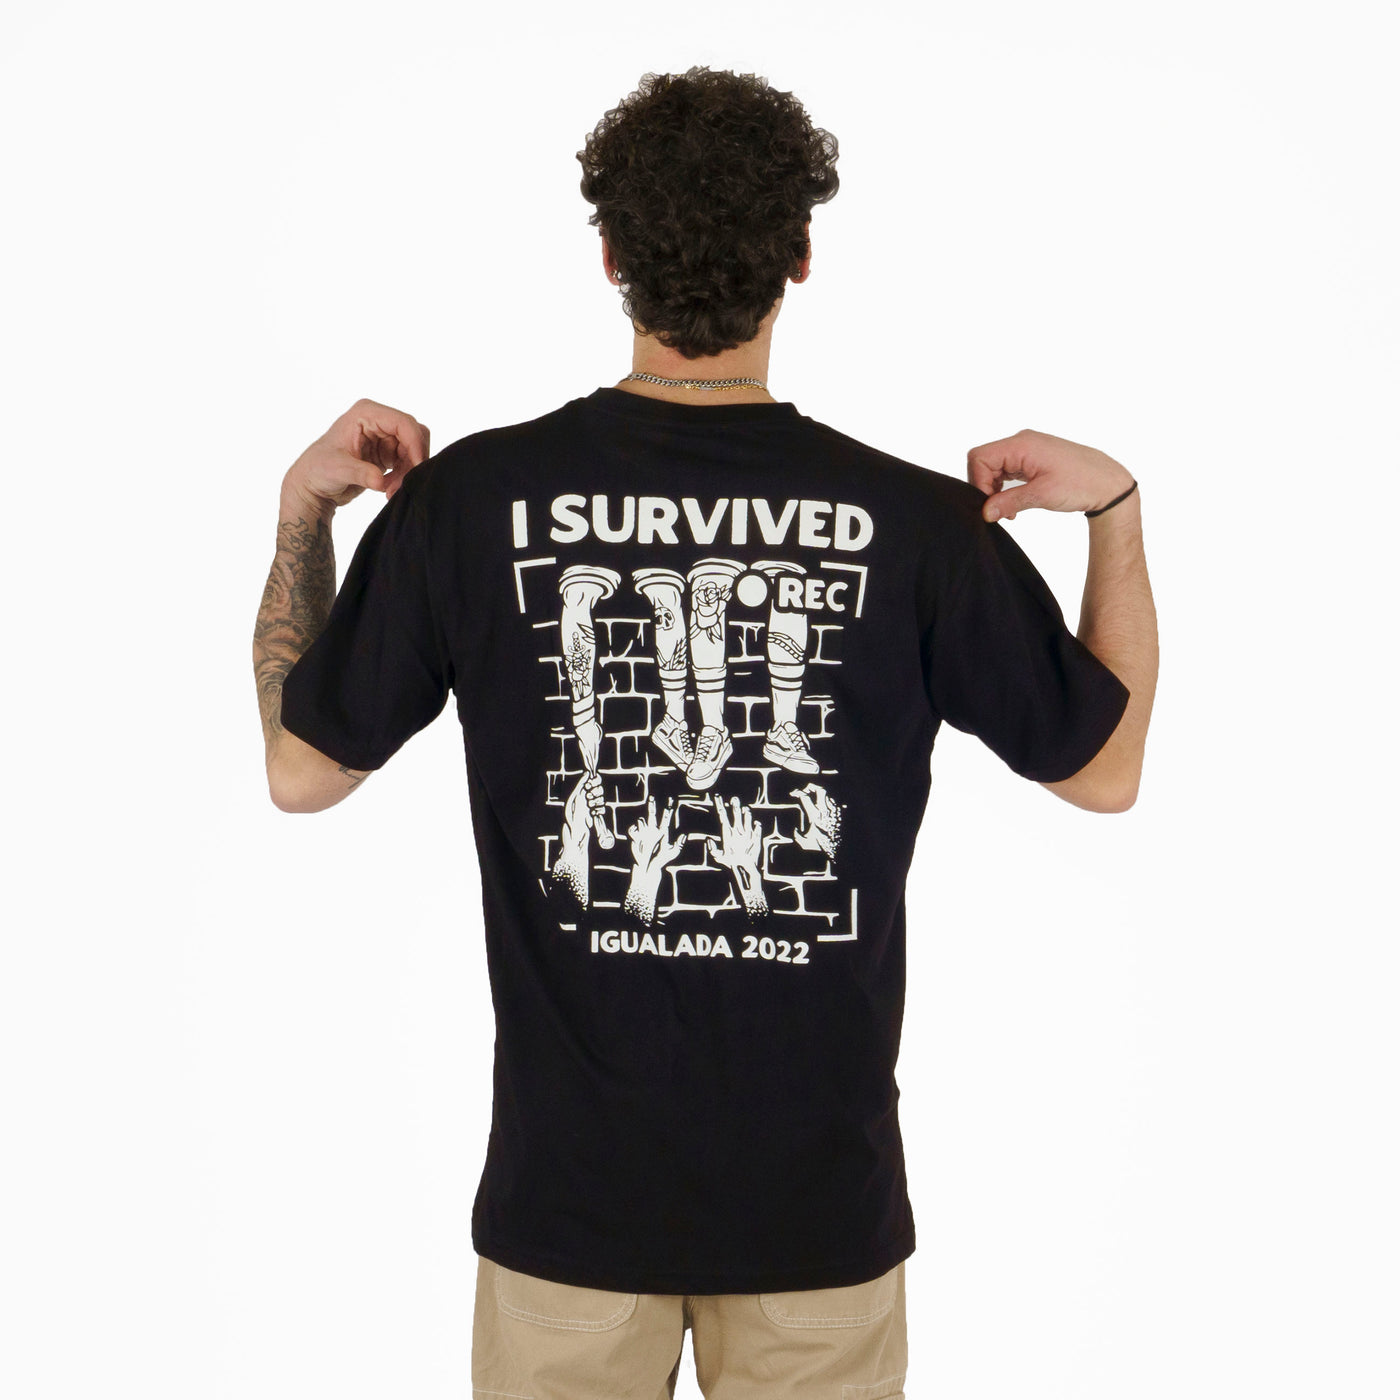 I Survived Rec - Camiseta